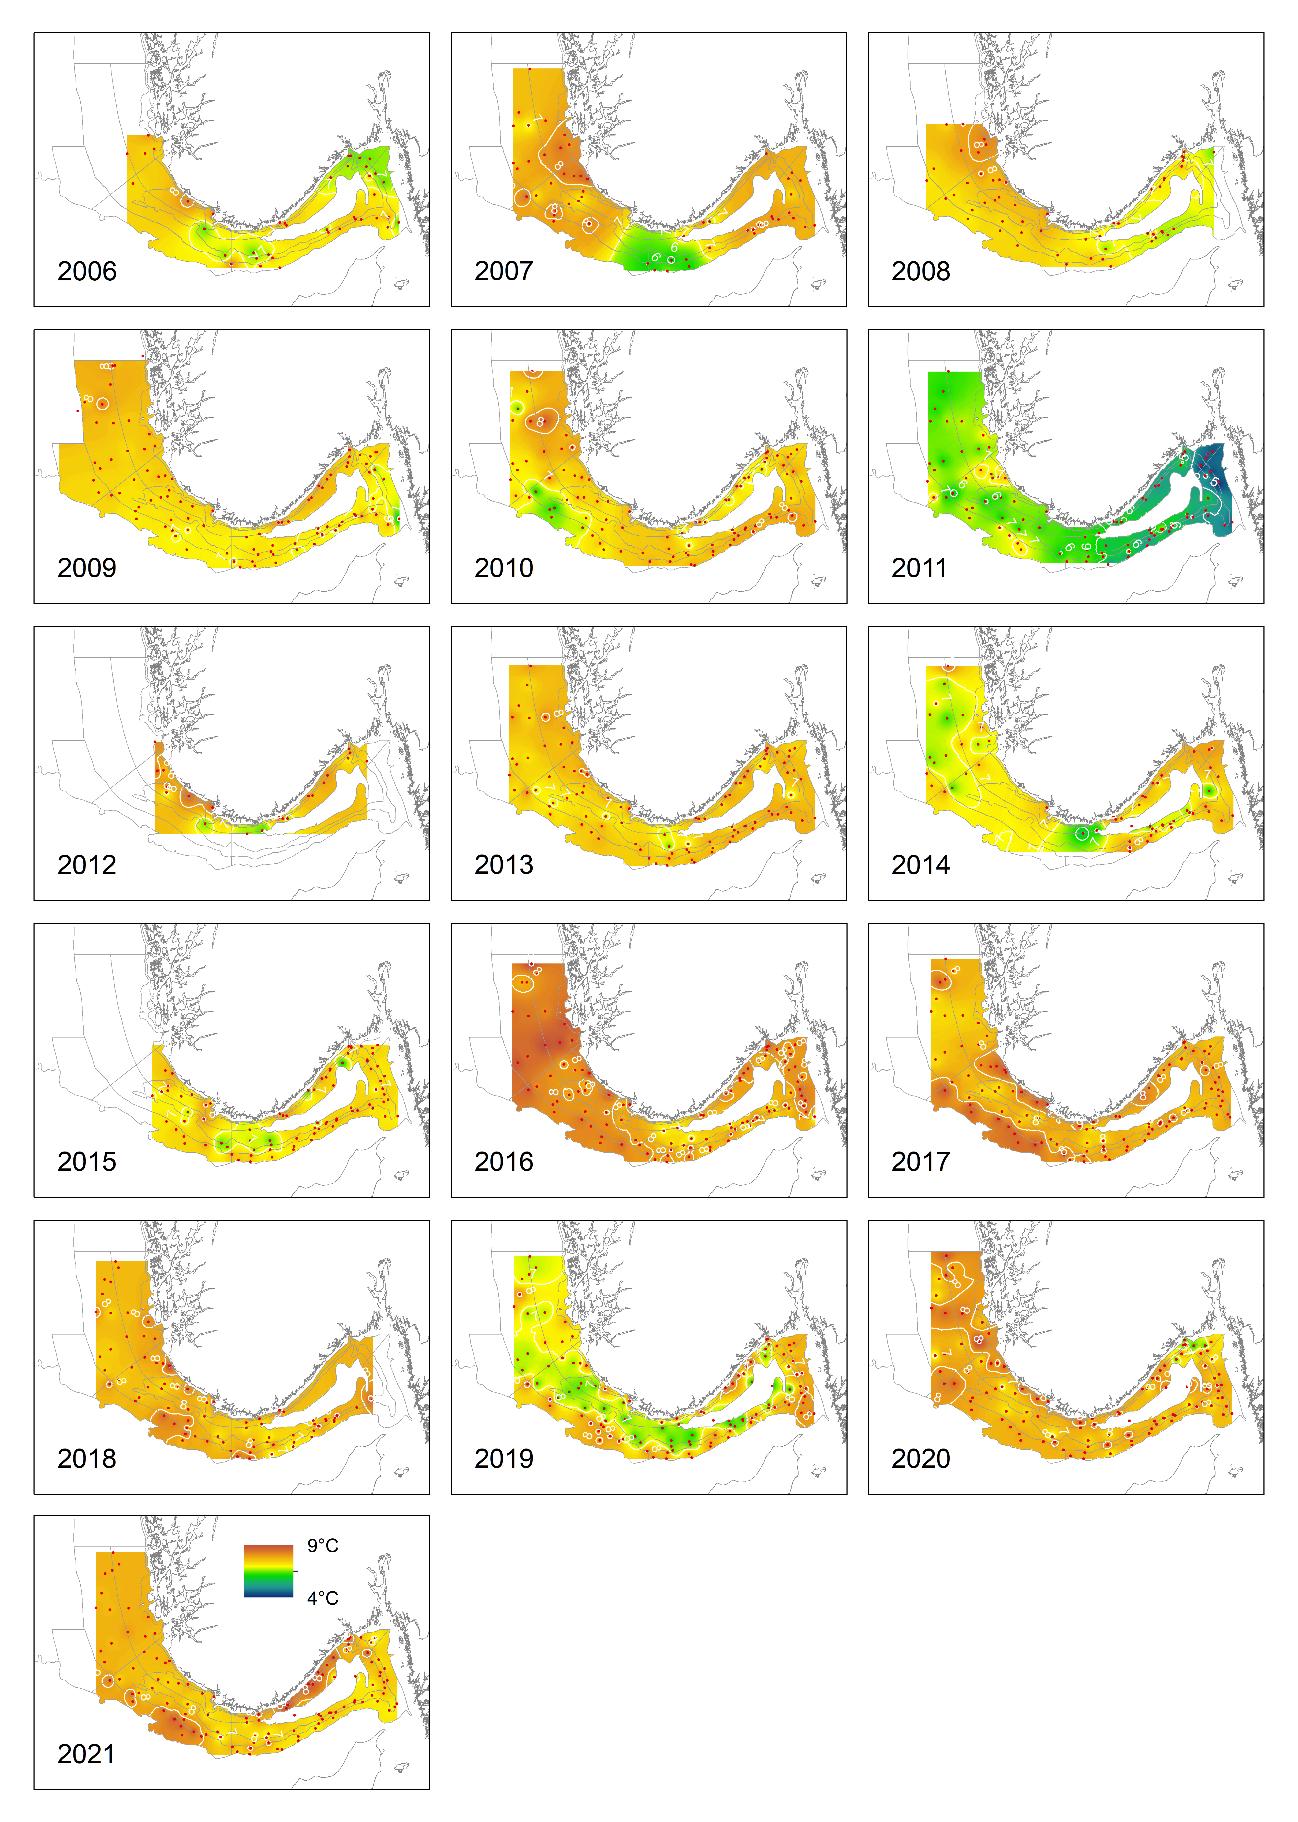 Kartutsnittene er fra 2006 til 2021. 2006 er øverst til venstre, det er tre kart på hver linje. Fargeskalaen er vist på kartutsnittet fra 2021 (helt nederst til venstre). Fargeskalaen går fra 9 grader (øverst, rødt) til 4 grader (nederst, blått).